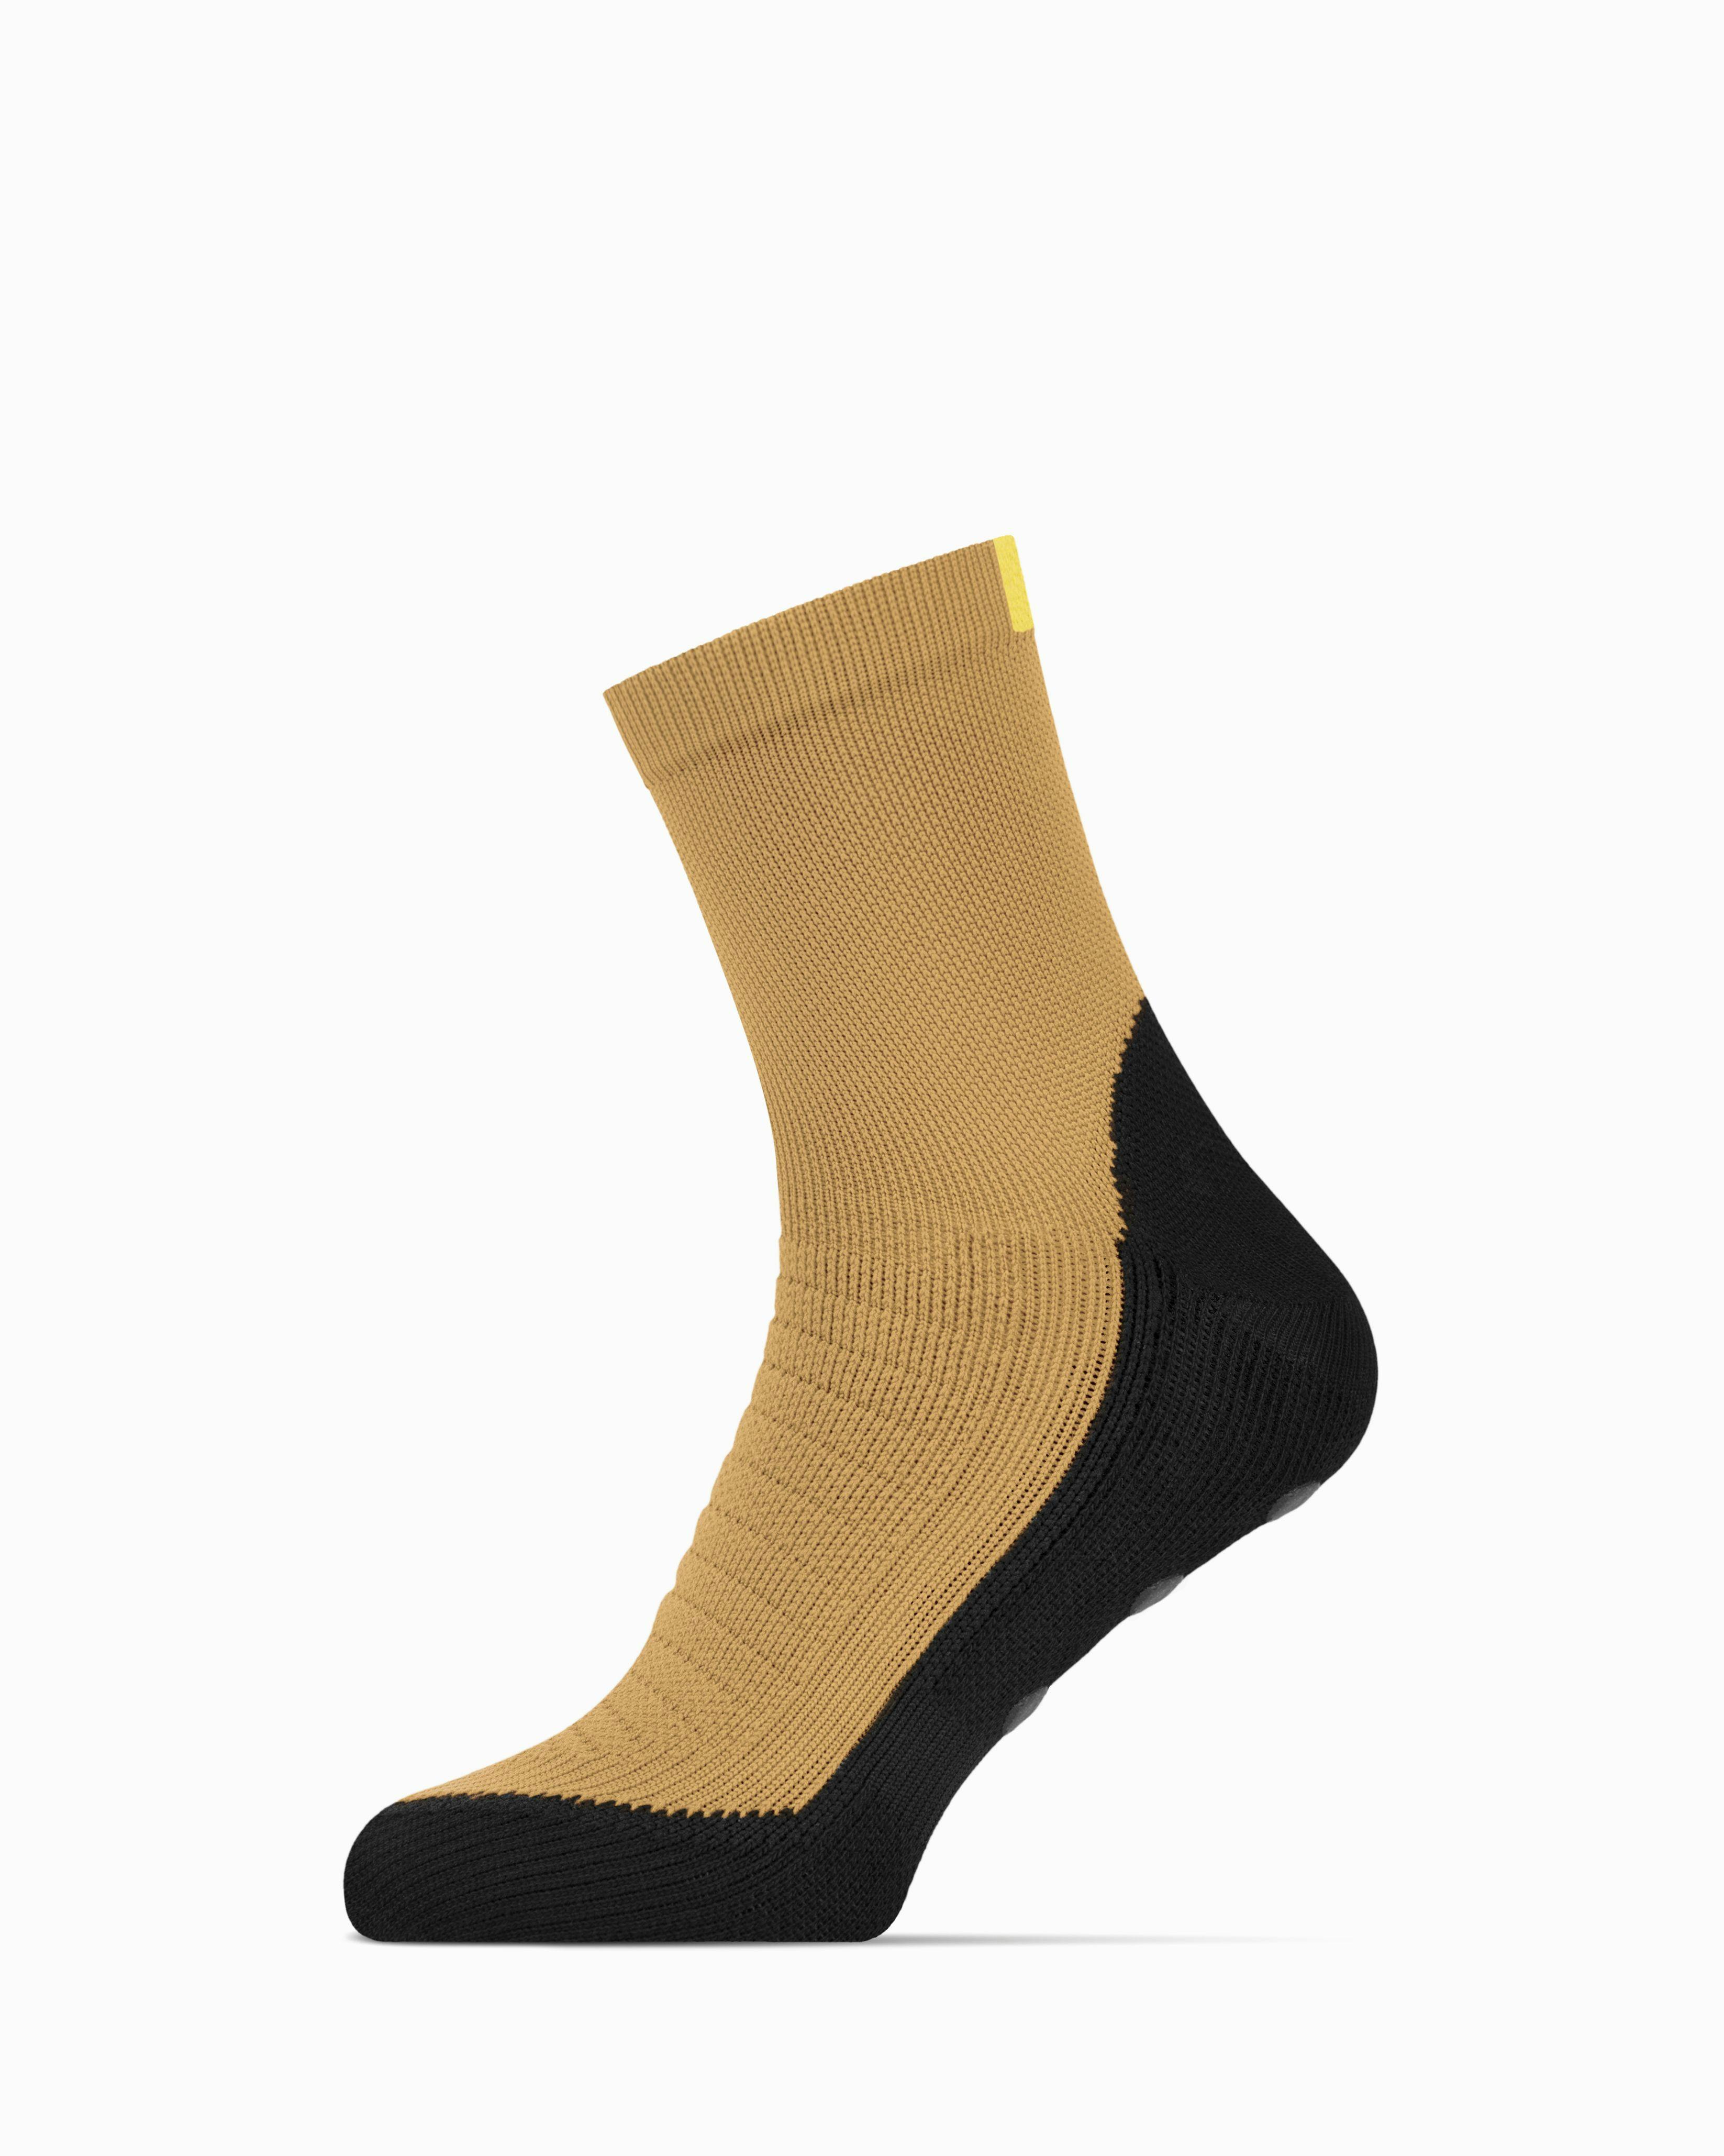 Premgripp Socks (Tan)